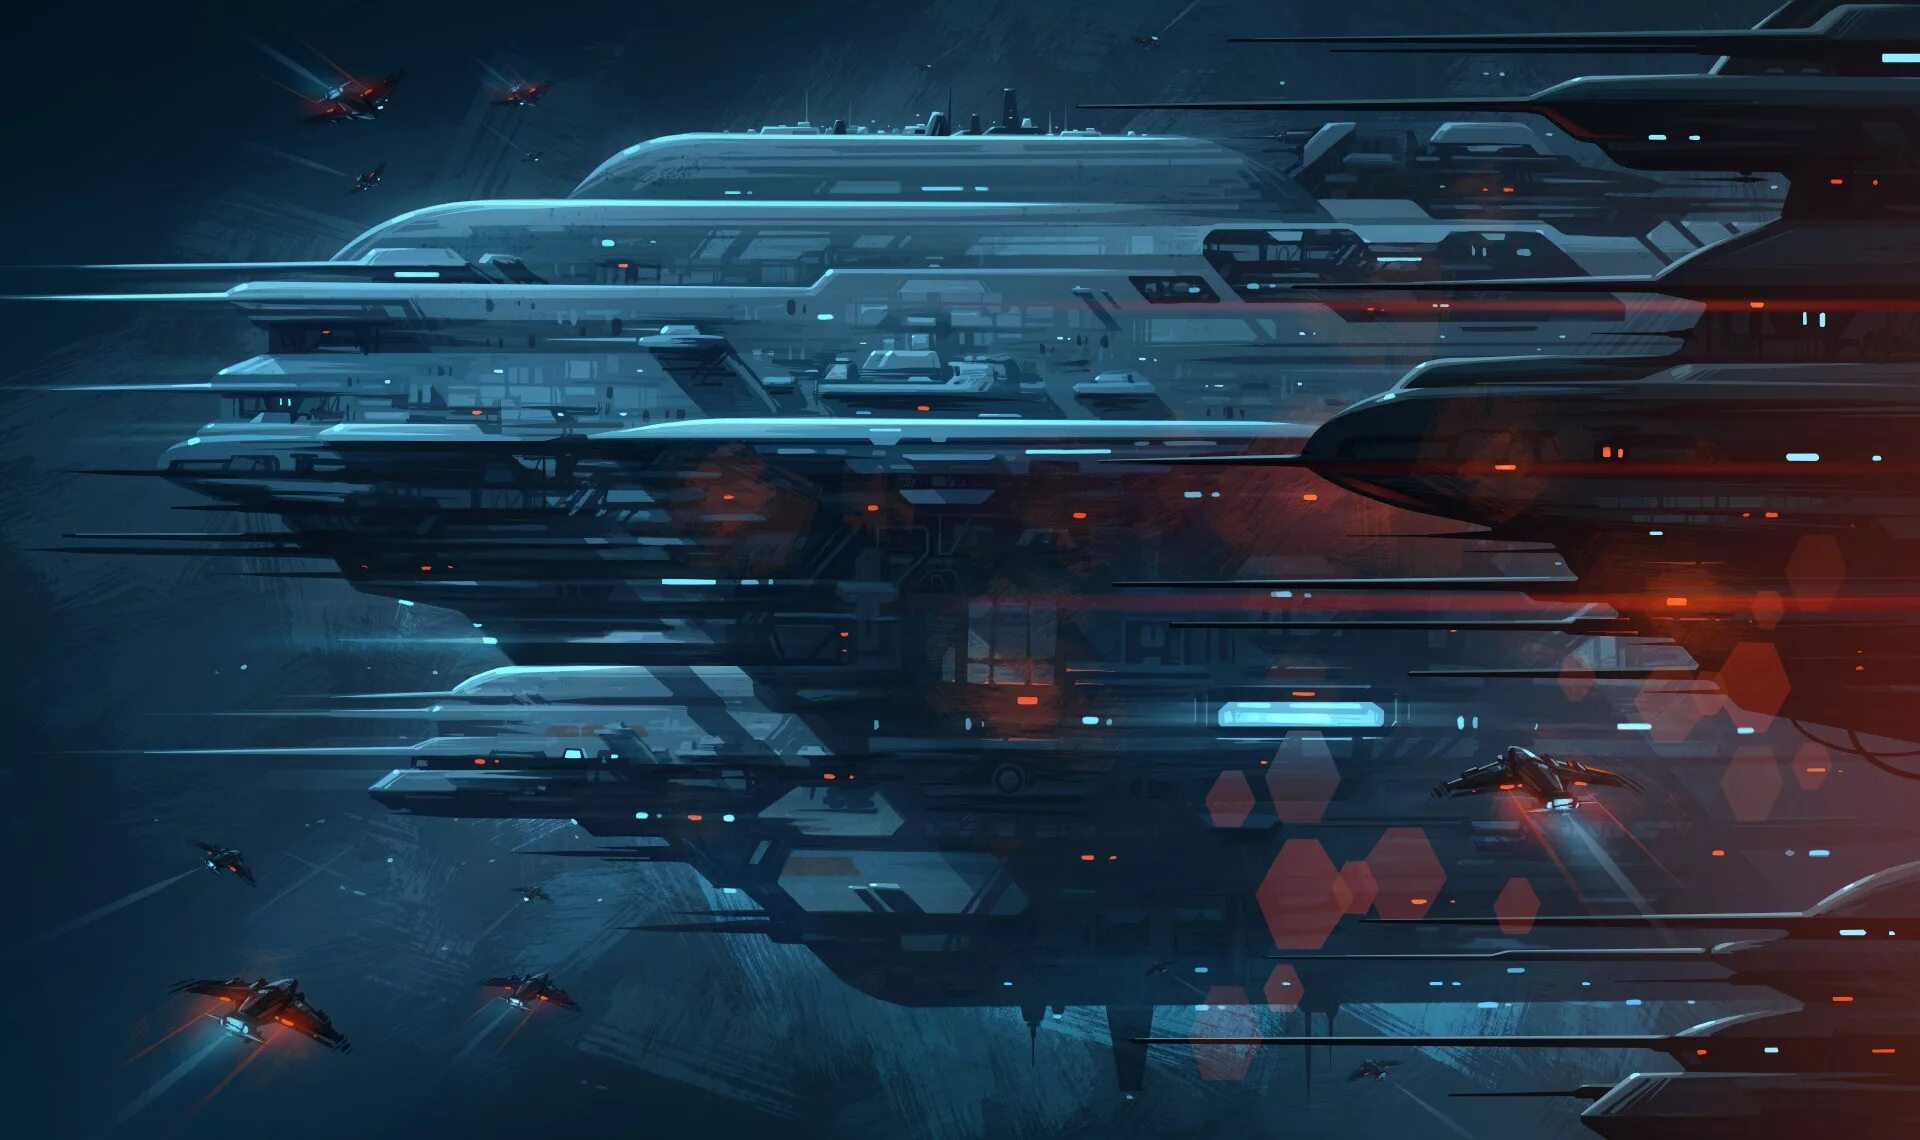 Sci fi space. Sci-Fi Art космические корабли. Cyberpunk Art космический корабль,.... Космос Sci Fi арт. Футуристические корабли.